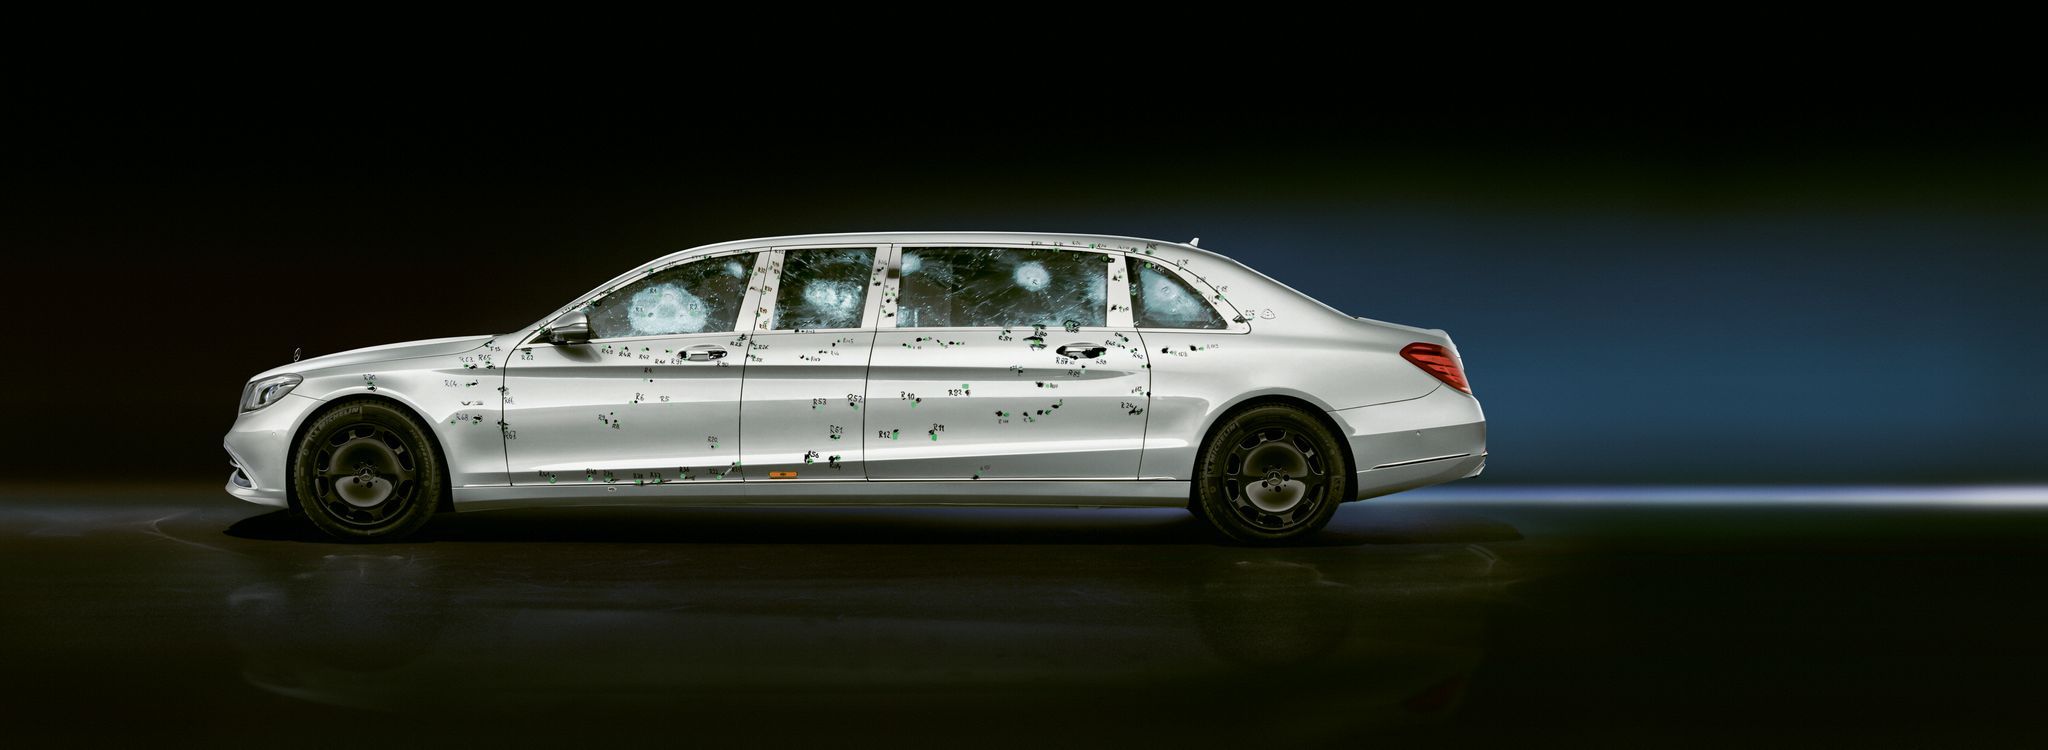 HANDOUT - Las balas marcan pero no perforan la carrocería y los vidrios del Mercedes-Maybach S 650 Pullman Guard. Foto: Daimler AG/dpa - ATENCIÓN: Sólo para uso editorial con el texto adjunto y mencionando el crédito completo